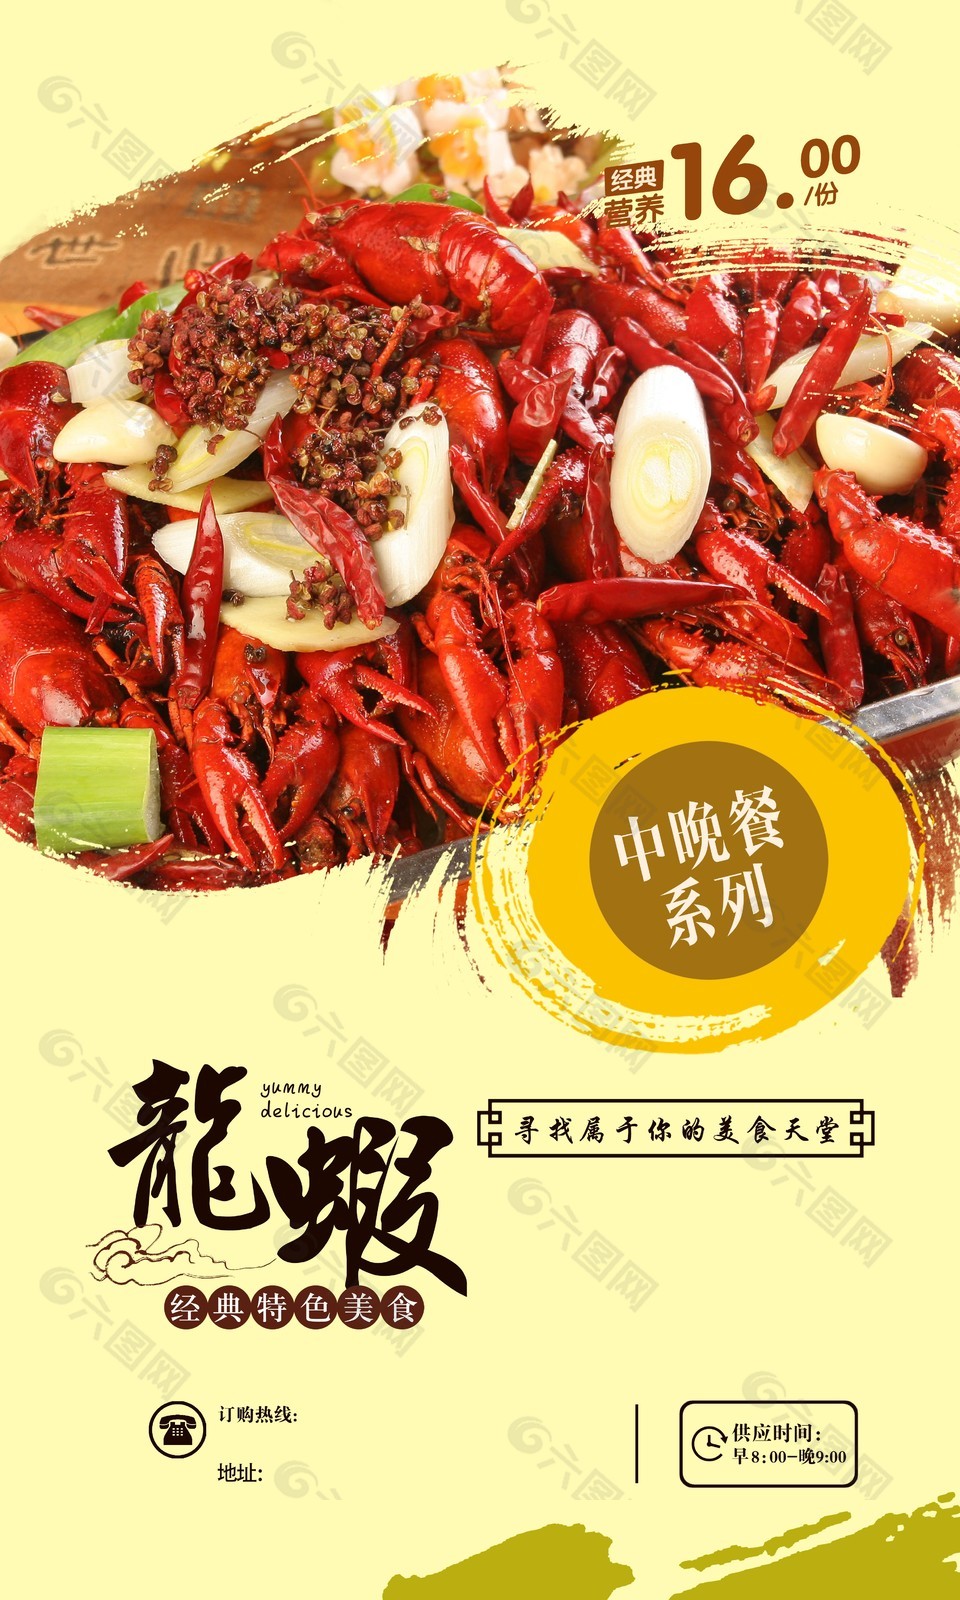 经典特色美食小龙虾活动宣传海报素材